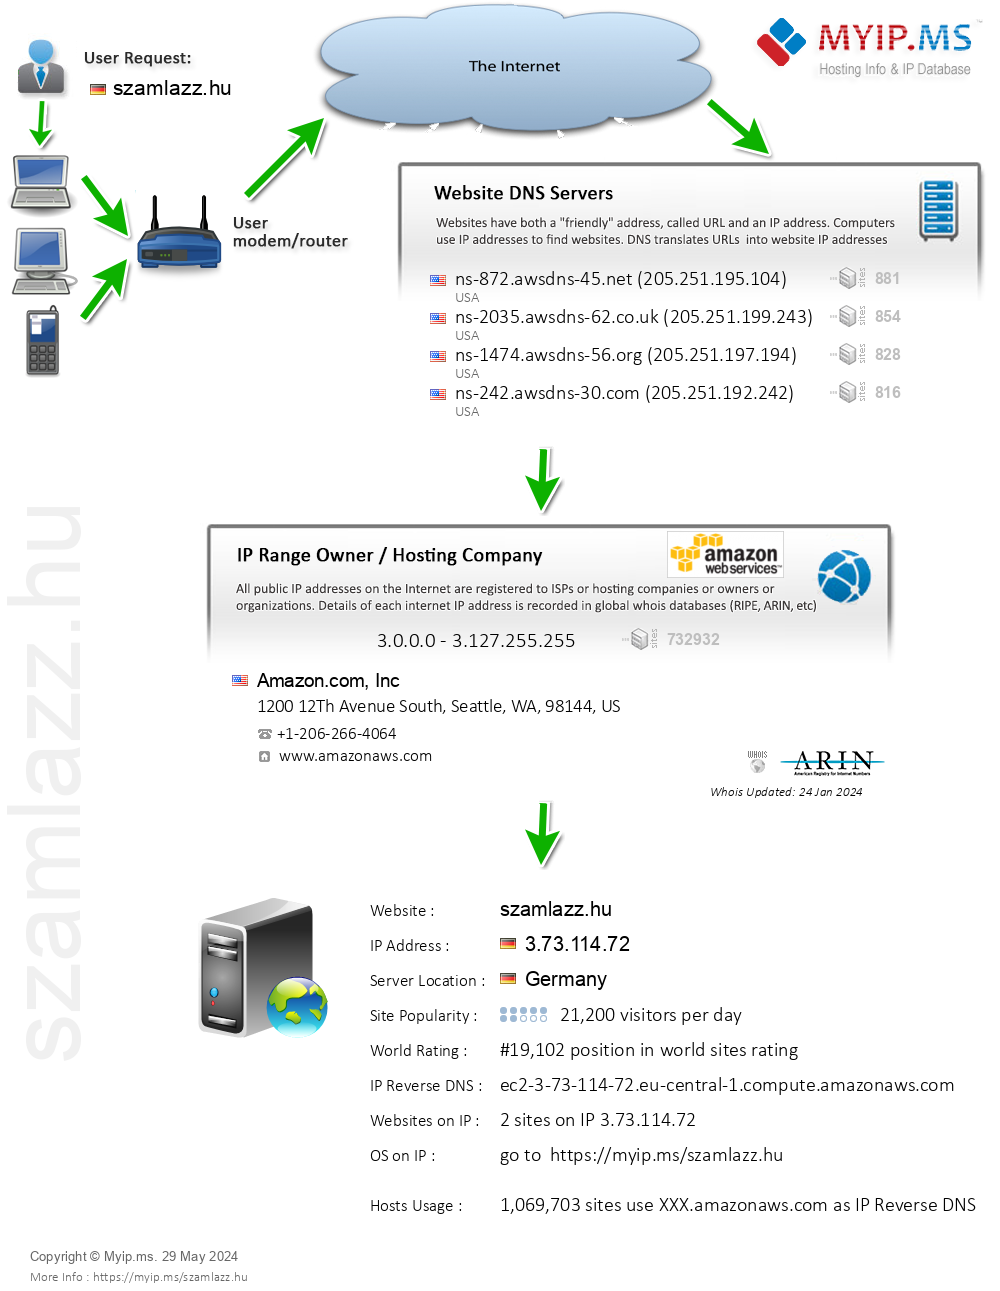 Szamlazz.hu - Website Hosting Visual IP Diagram